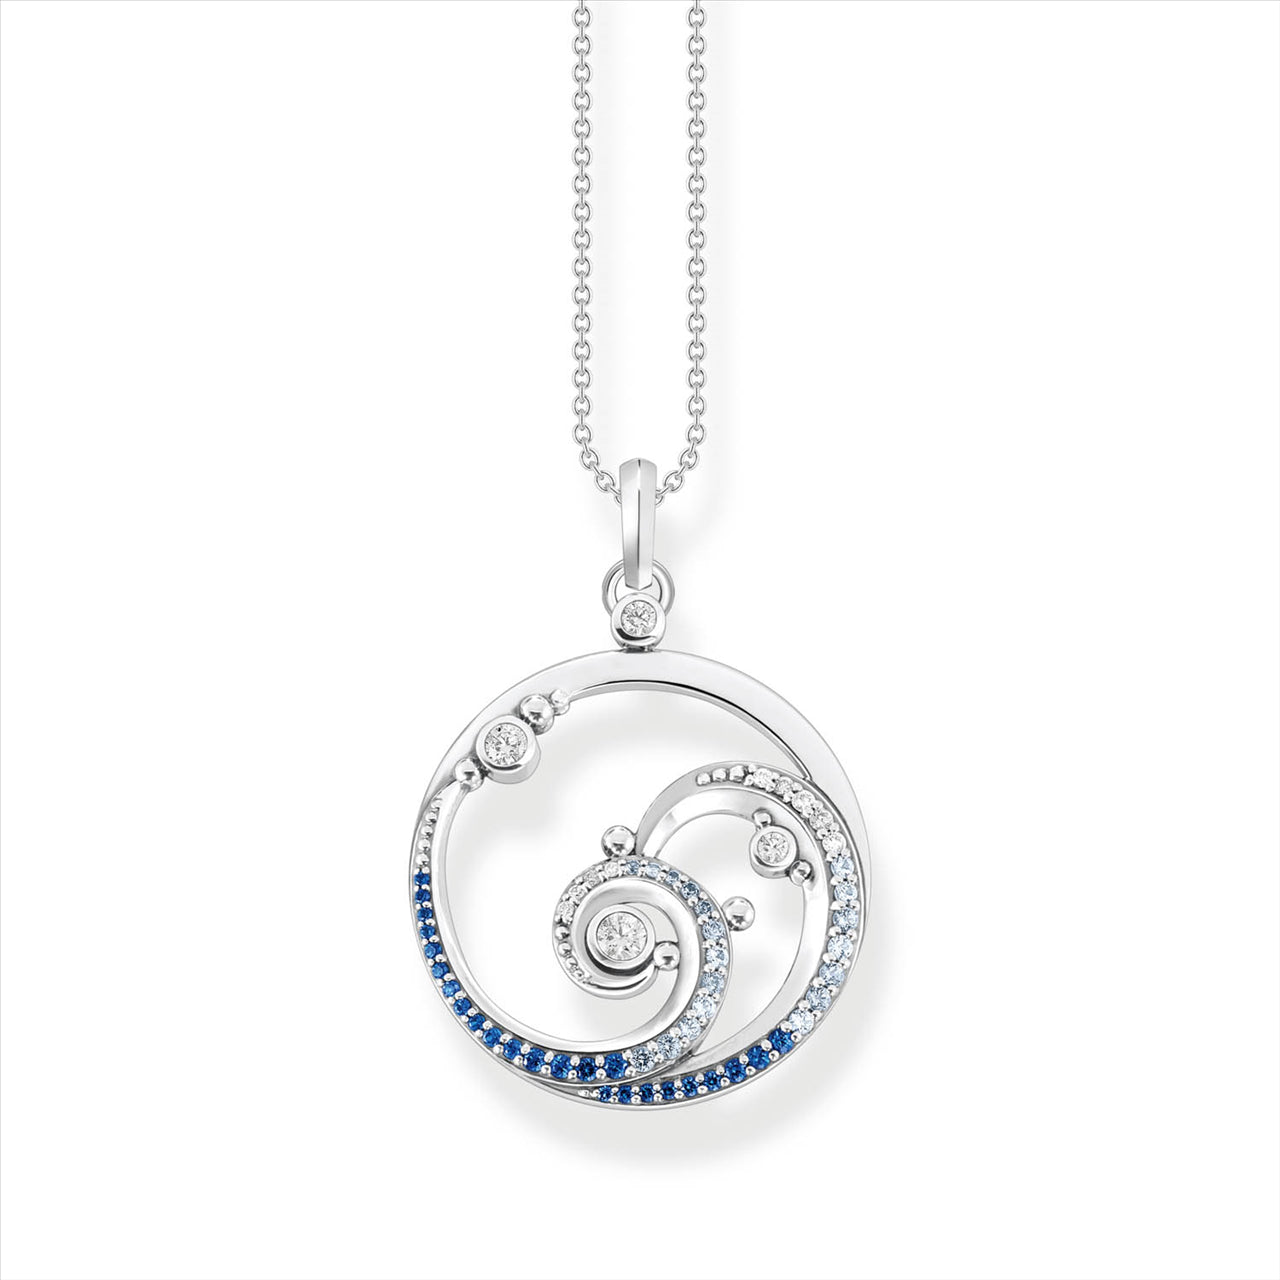 Thomas Sabo Blue Stone "Wave" Necklace